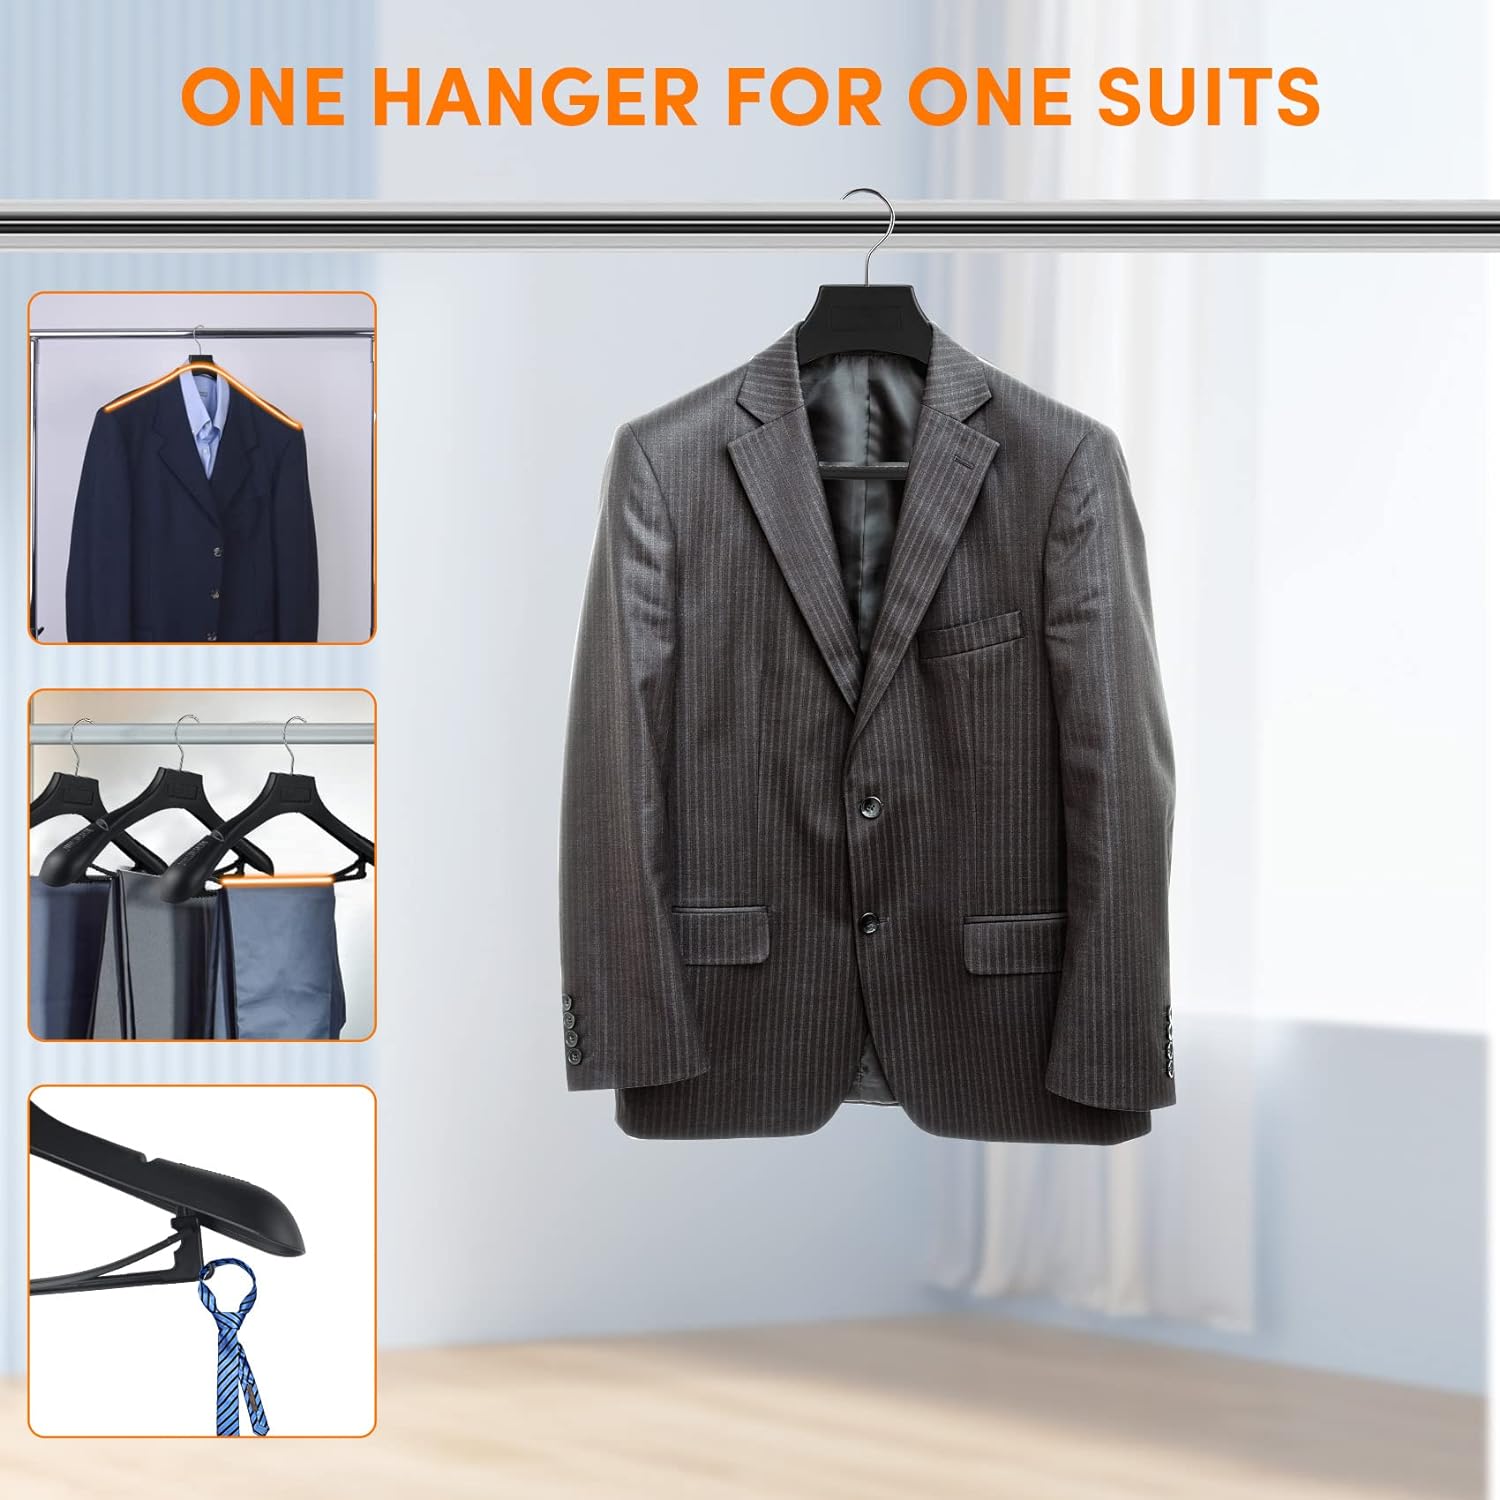 DEDU Suit Hangers for Men 20 Pack, Sweater Hangers No Shoulder Bump Non  Slip Width 17.7, Plastic Clothes Hangers Grey with 360° Swivel Metal Hook